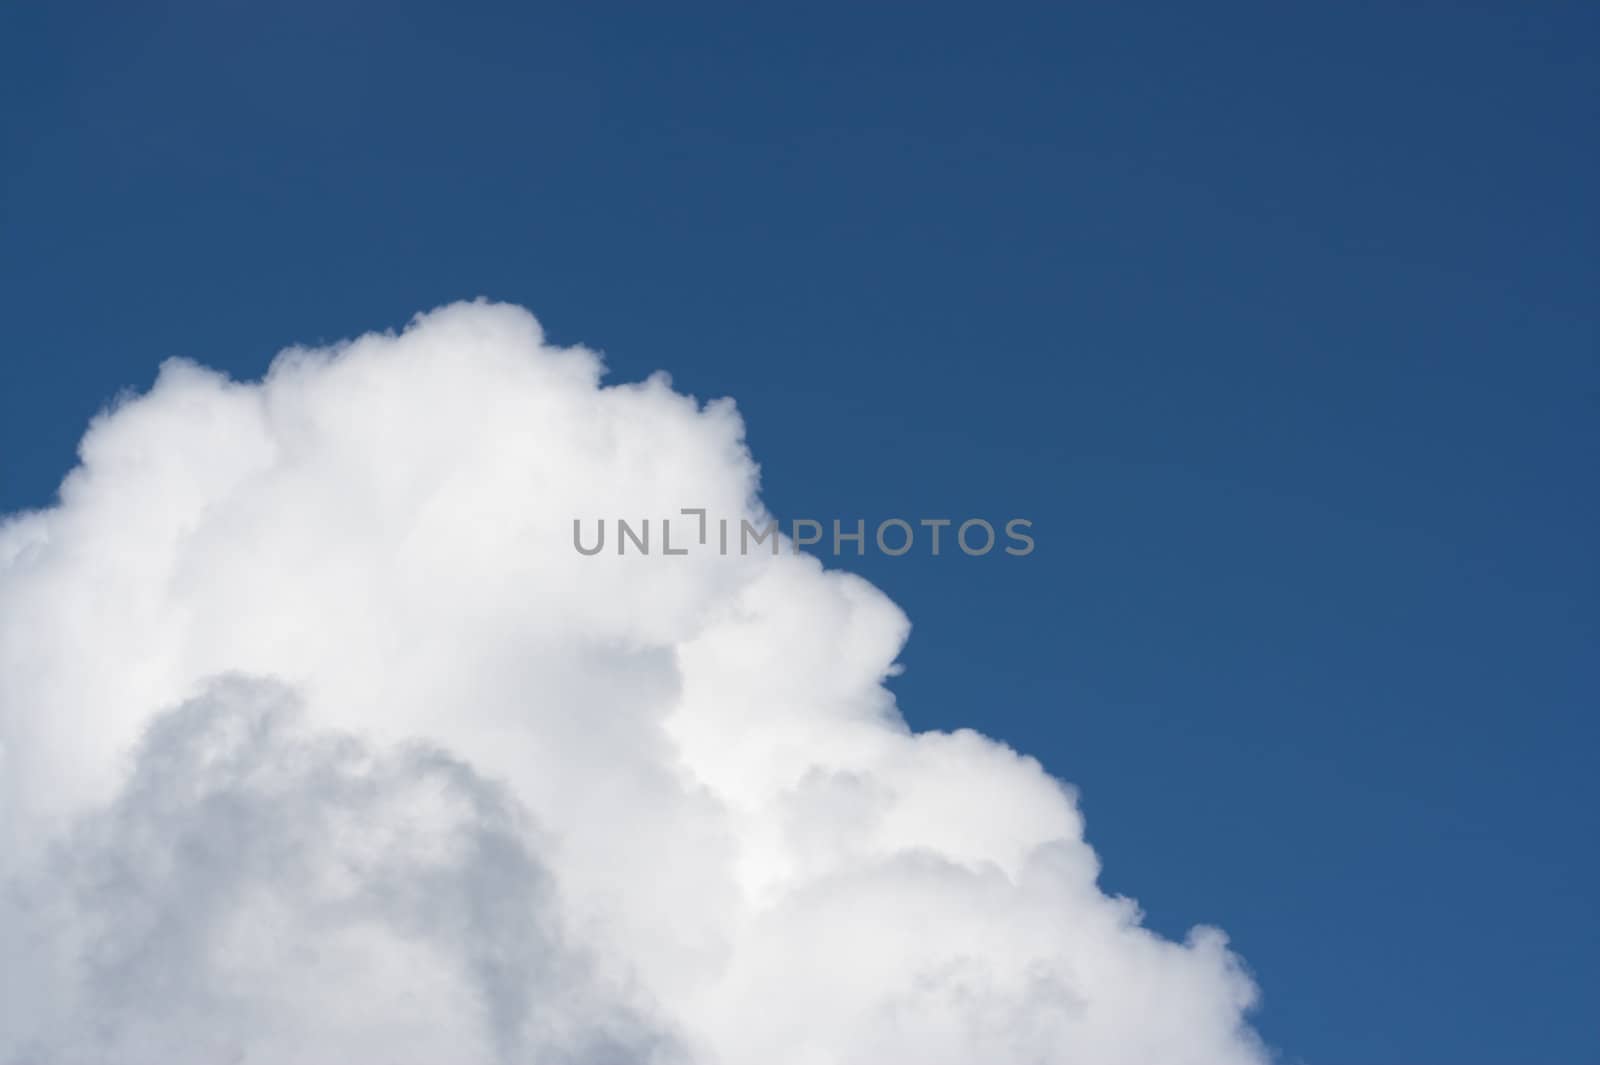 A big fluffy cumulus cloud in a blue sky